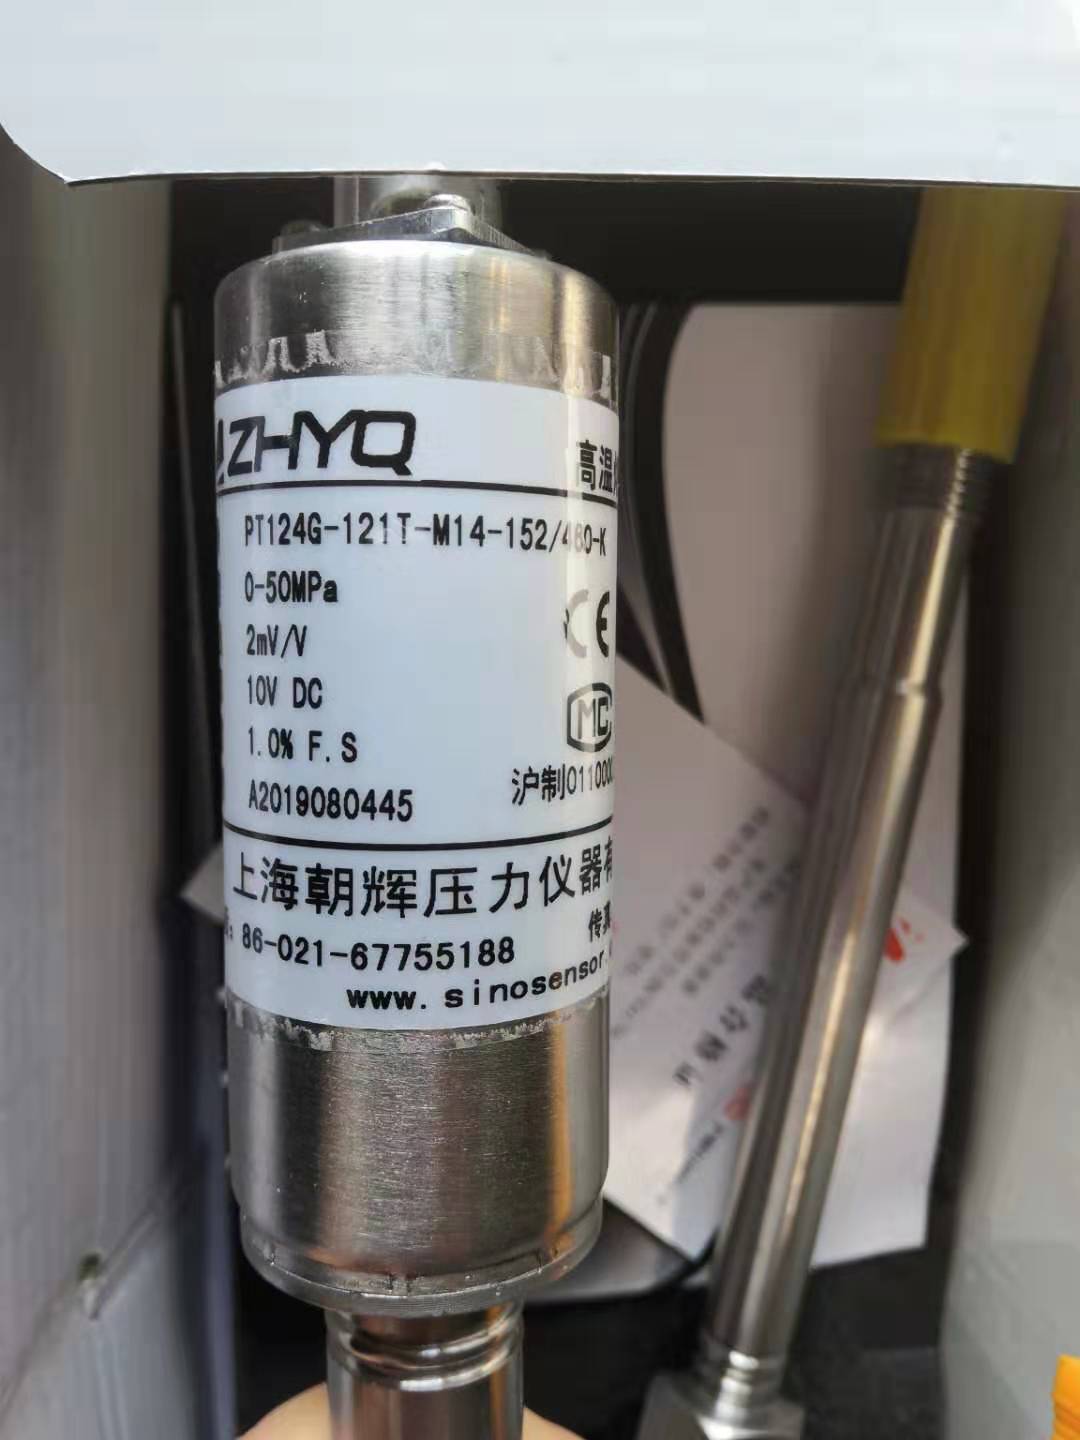 上海朝辉高温熔体压力传感器/变送器PT124G-121T-50MPa-M14-K 电子元器件市场 传感器 原图主图